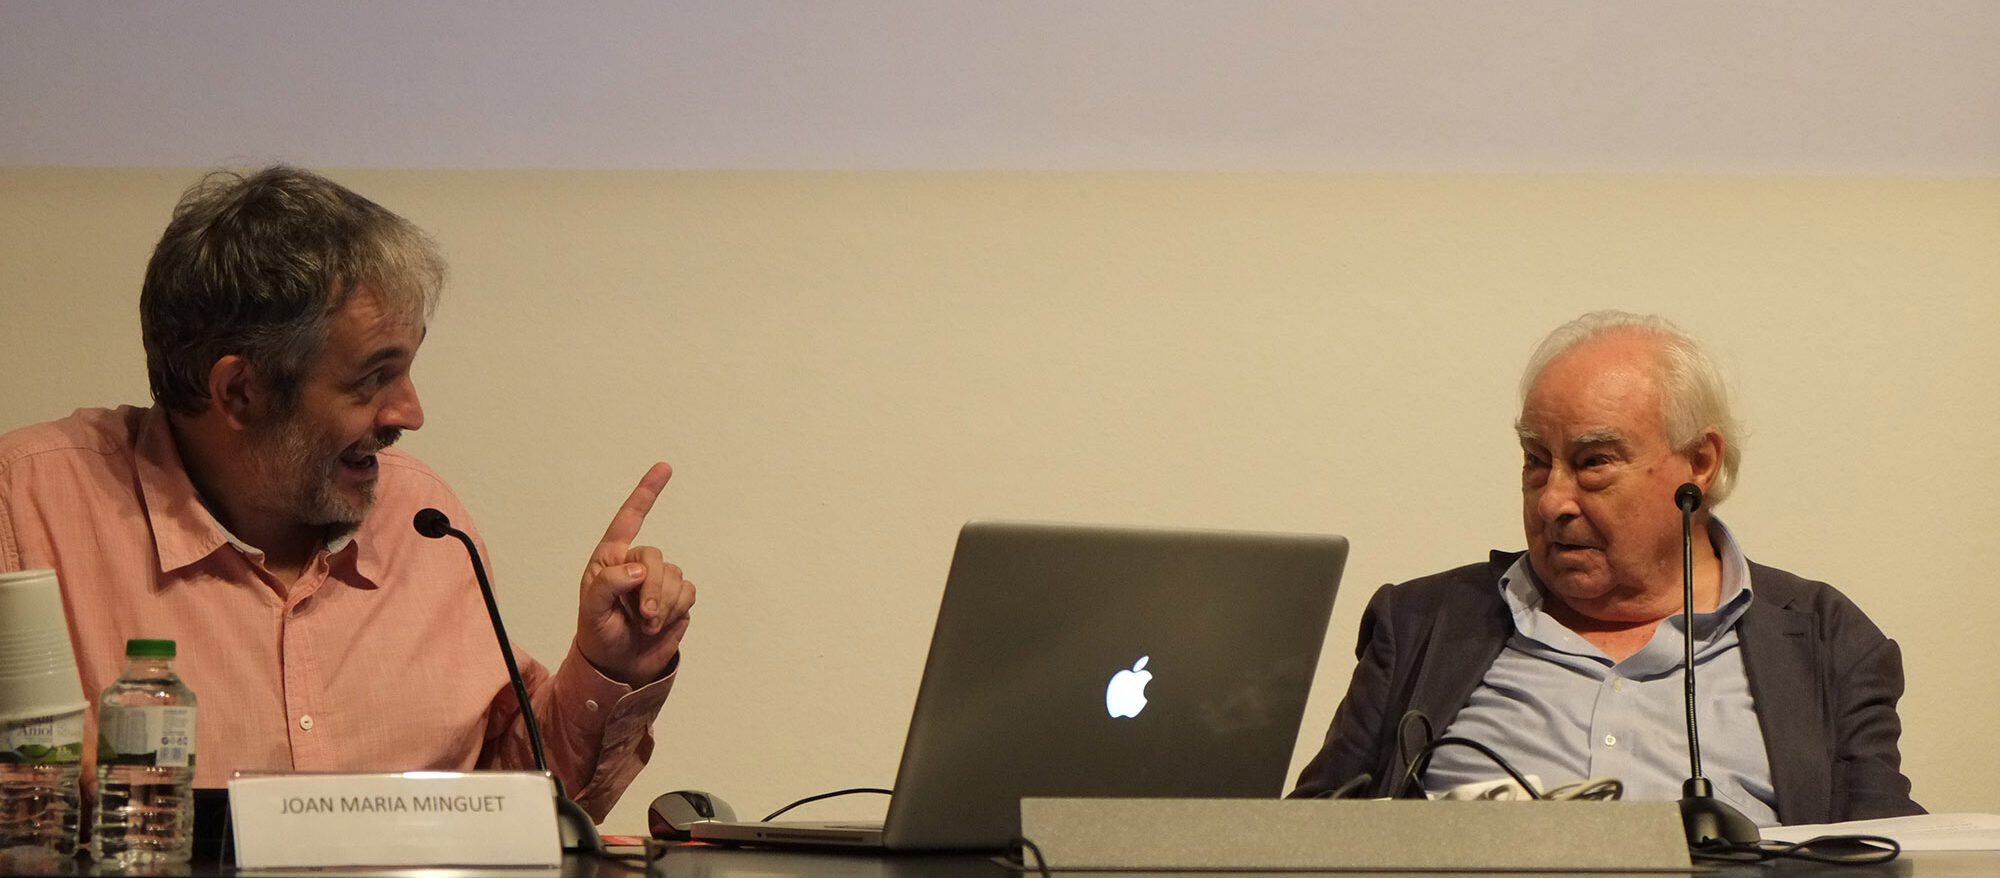 Arnau Puig, presidint una de les taules del curs que va dirigir, 'La filosofia dels mots, de les imatges, dels instruments', a La Virreina LAB, tardor del 2014 (fotografia: Joan Casellas).